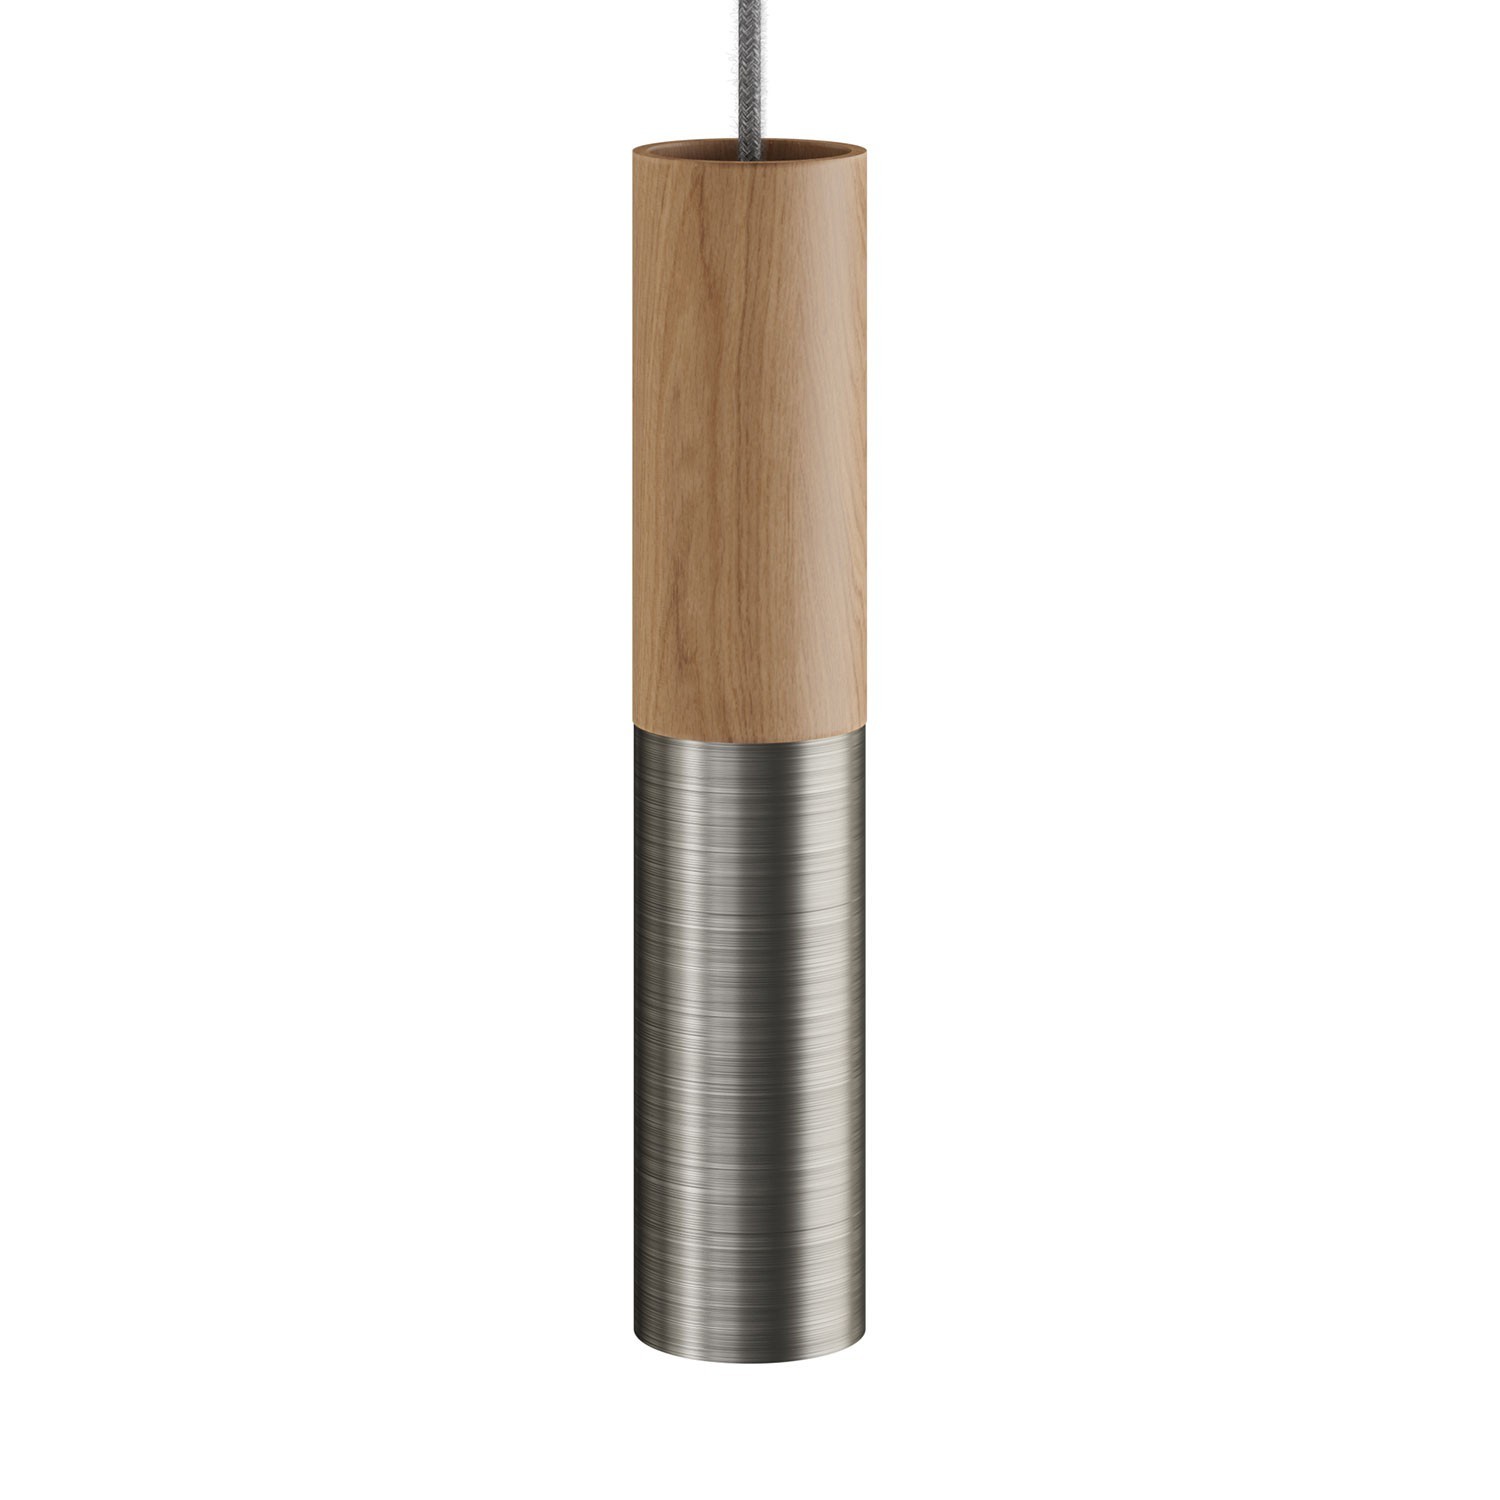 Tub-E14, træ- og metalrør til spotlight med E14 dobbeltring lampefatning